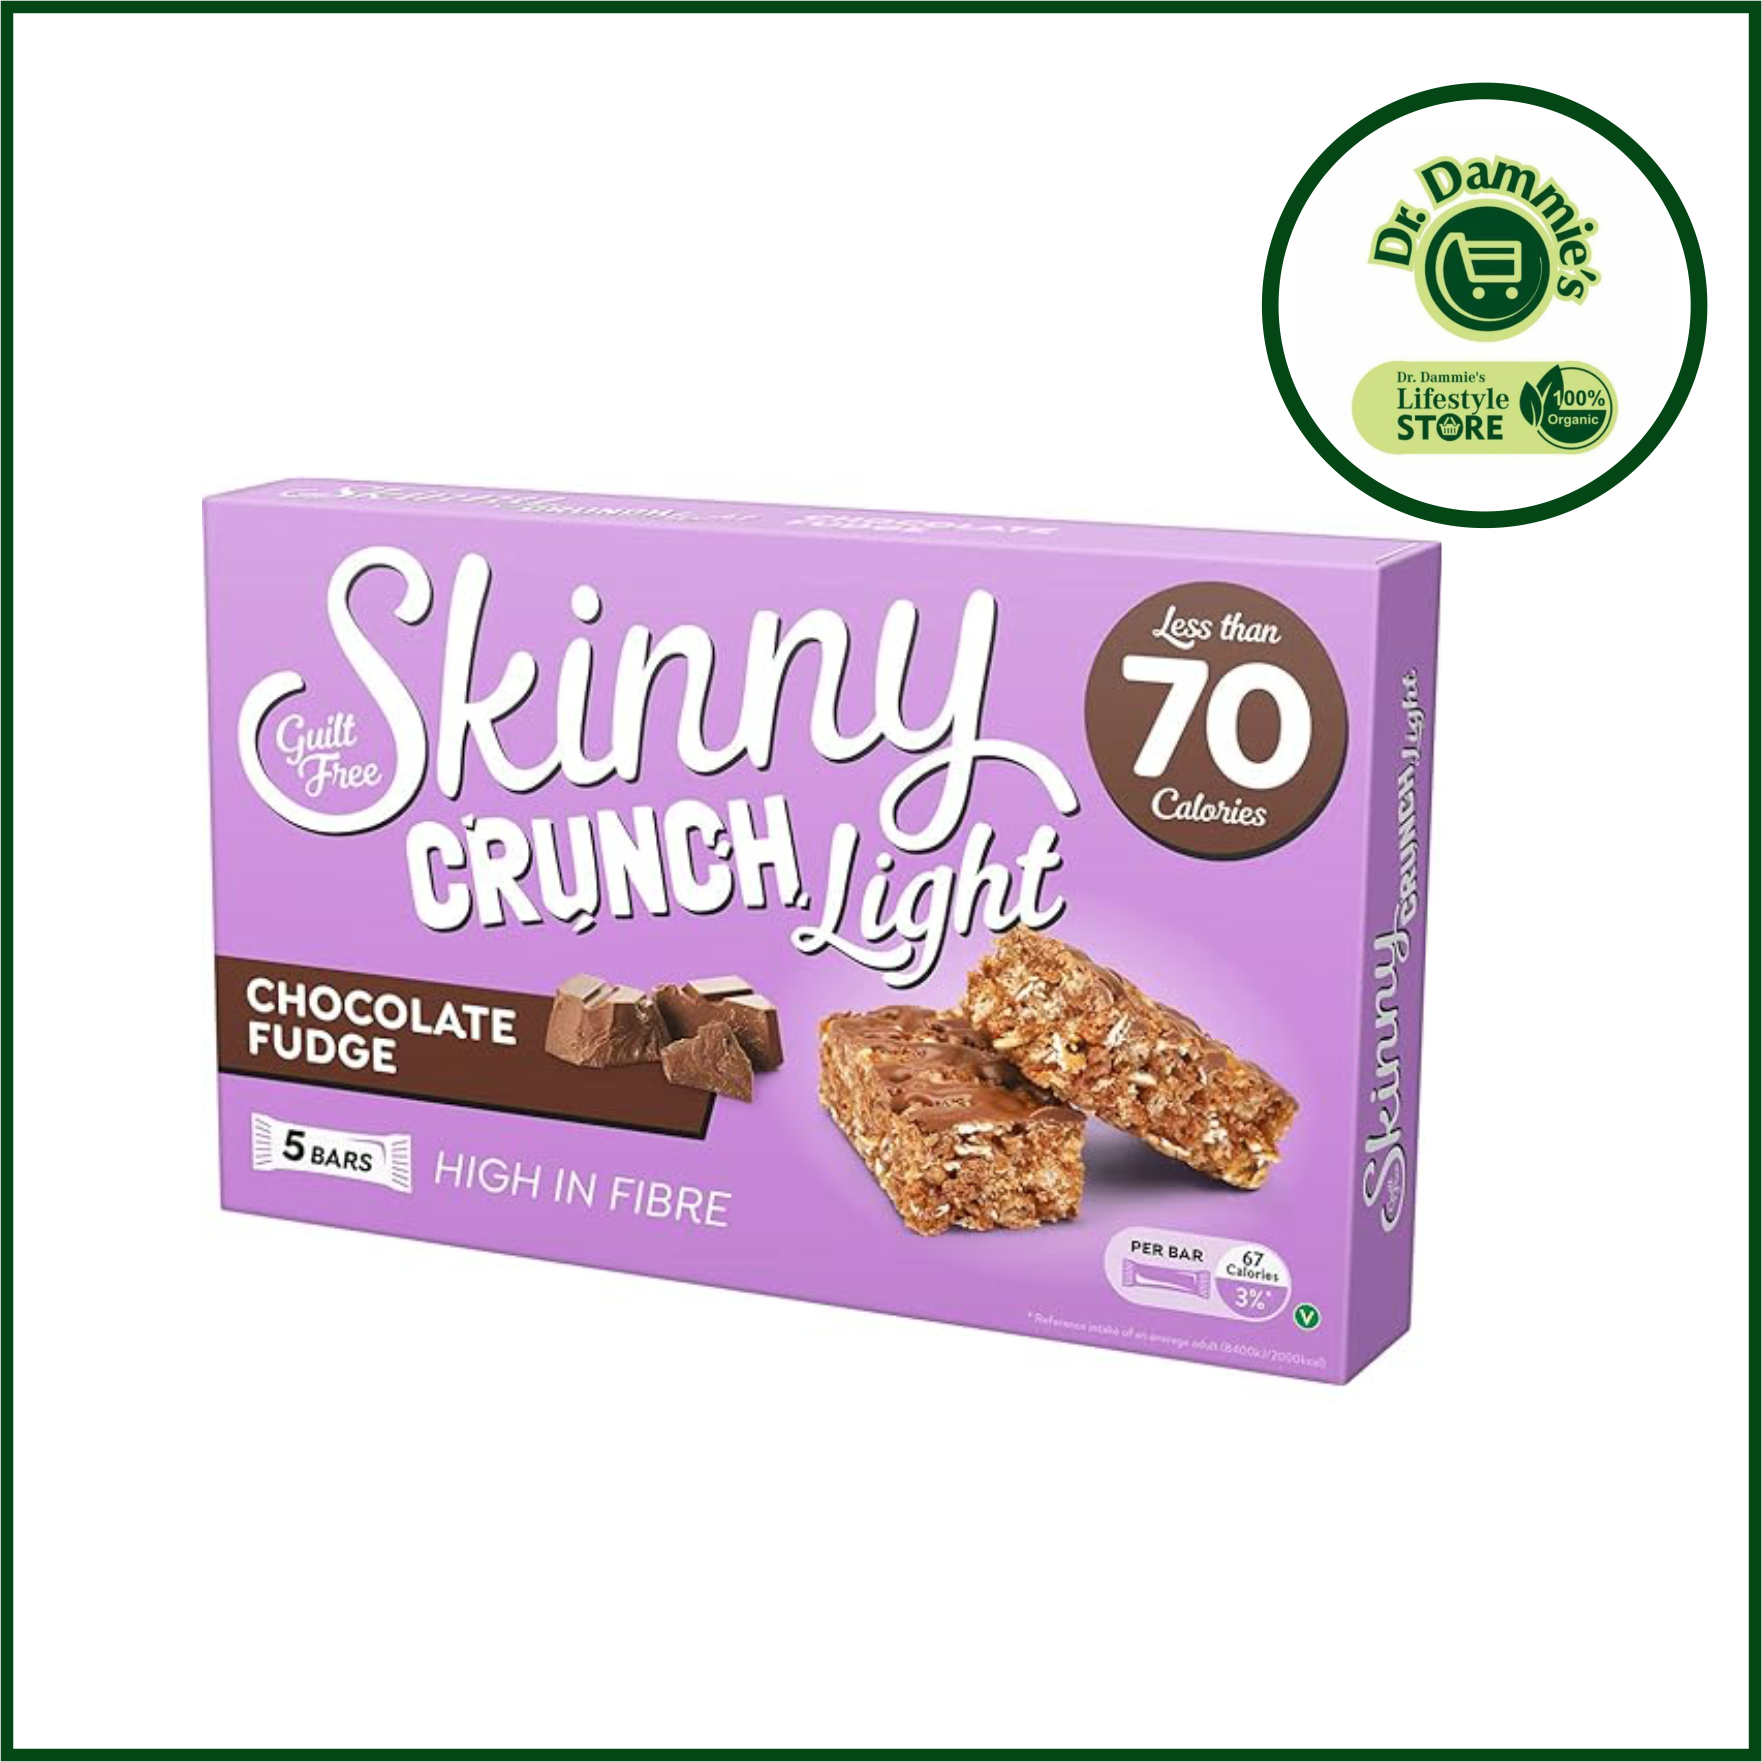 Skinny Crunch